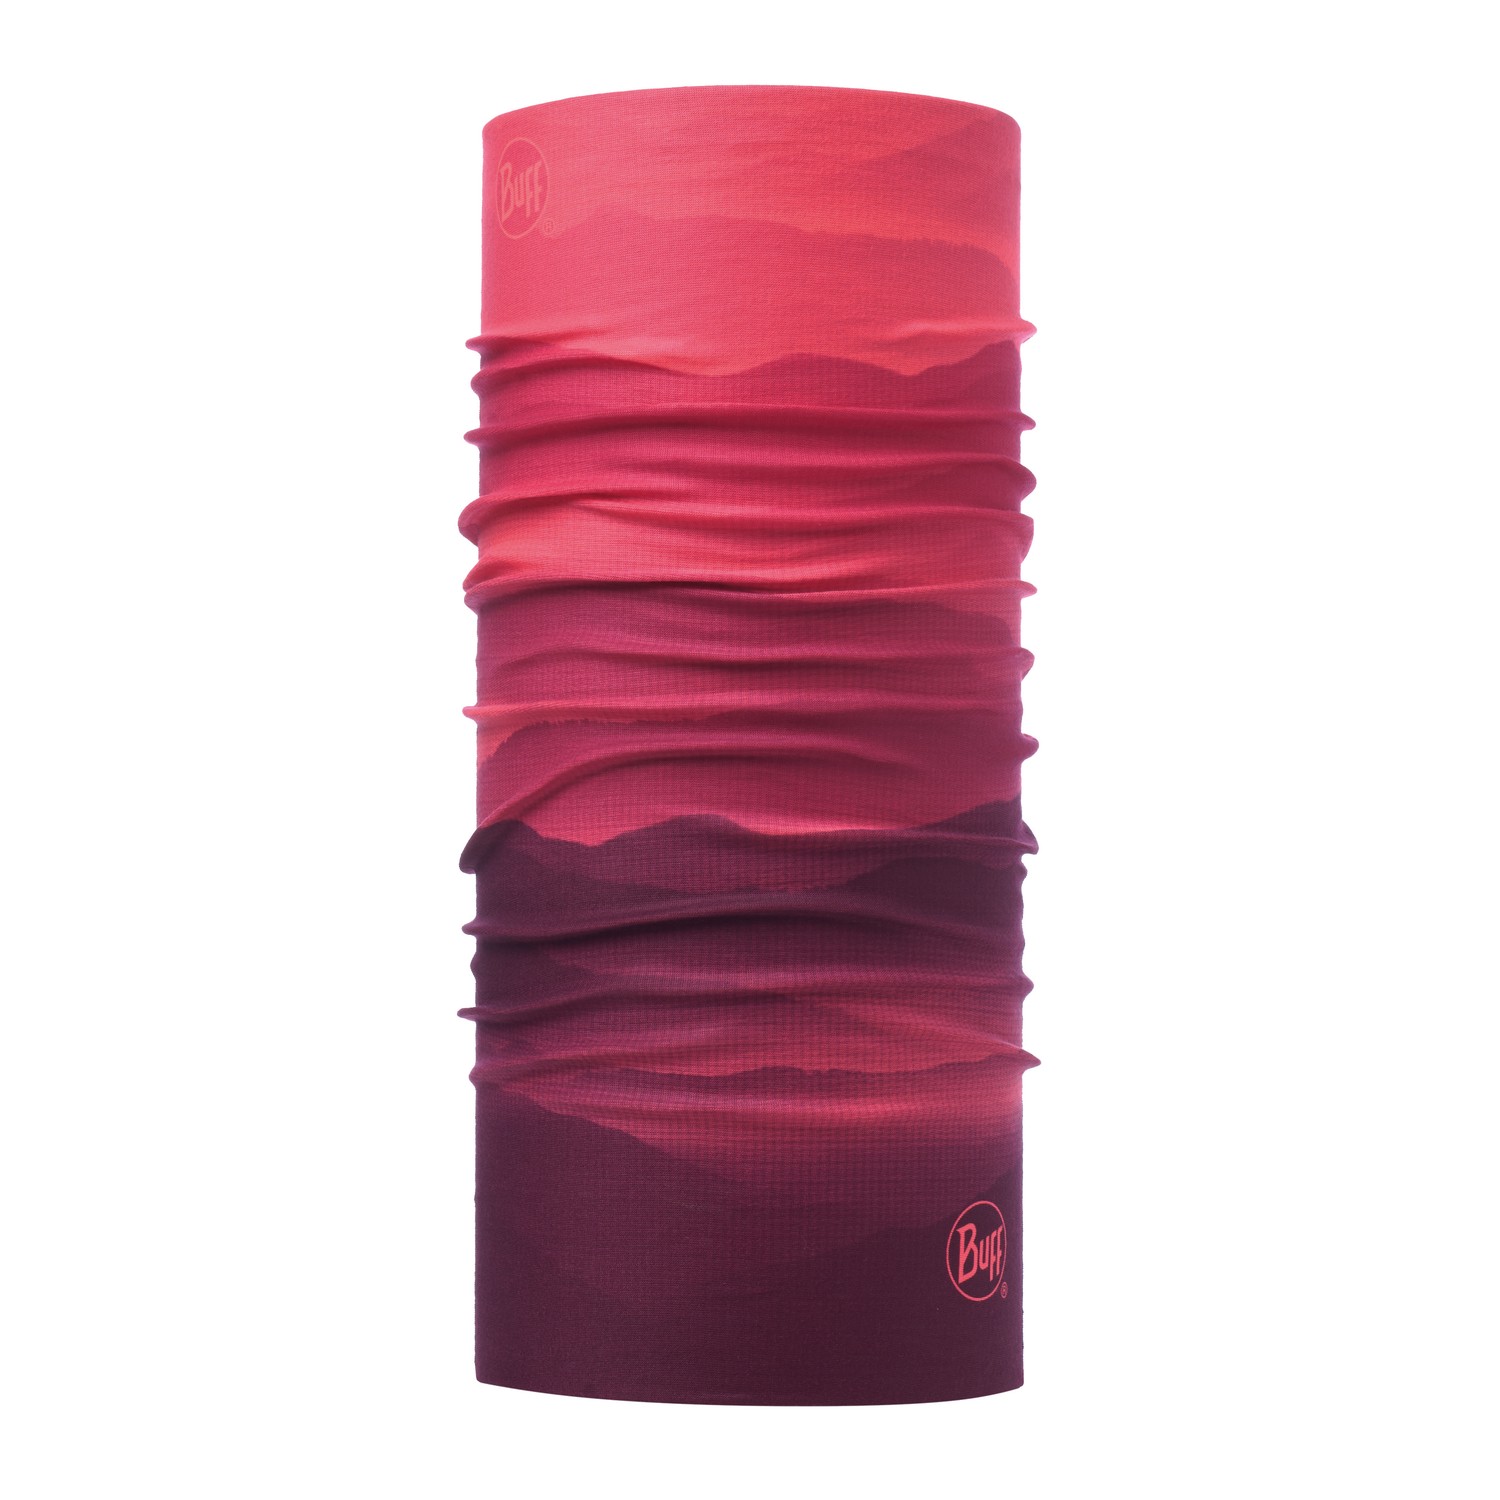 Buff Original Neckwarmer - Soft Hills Pink Fluor